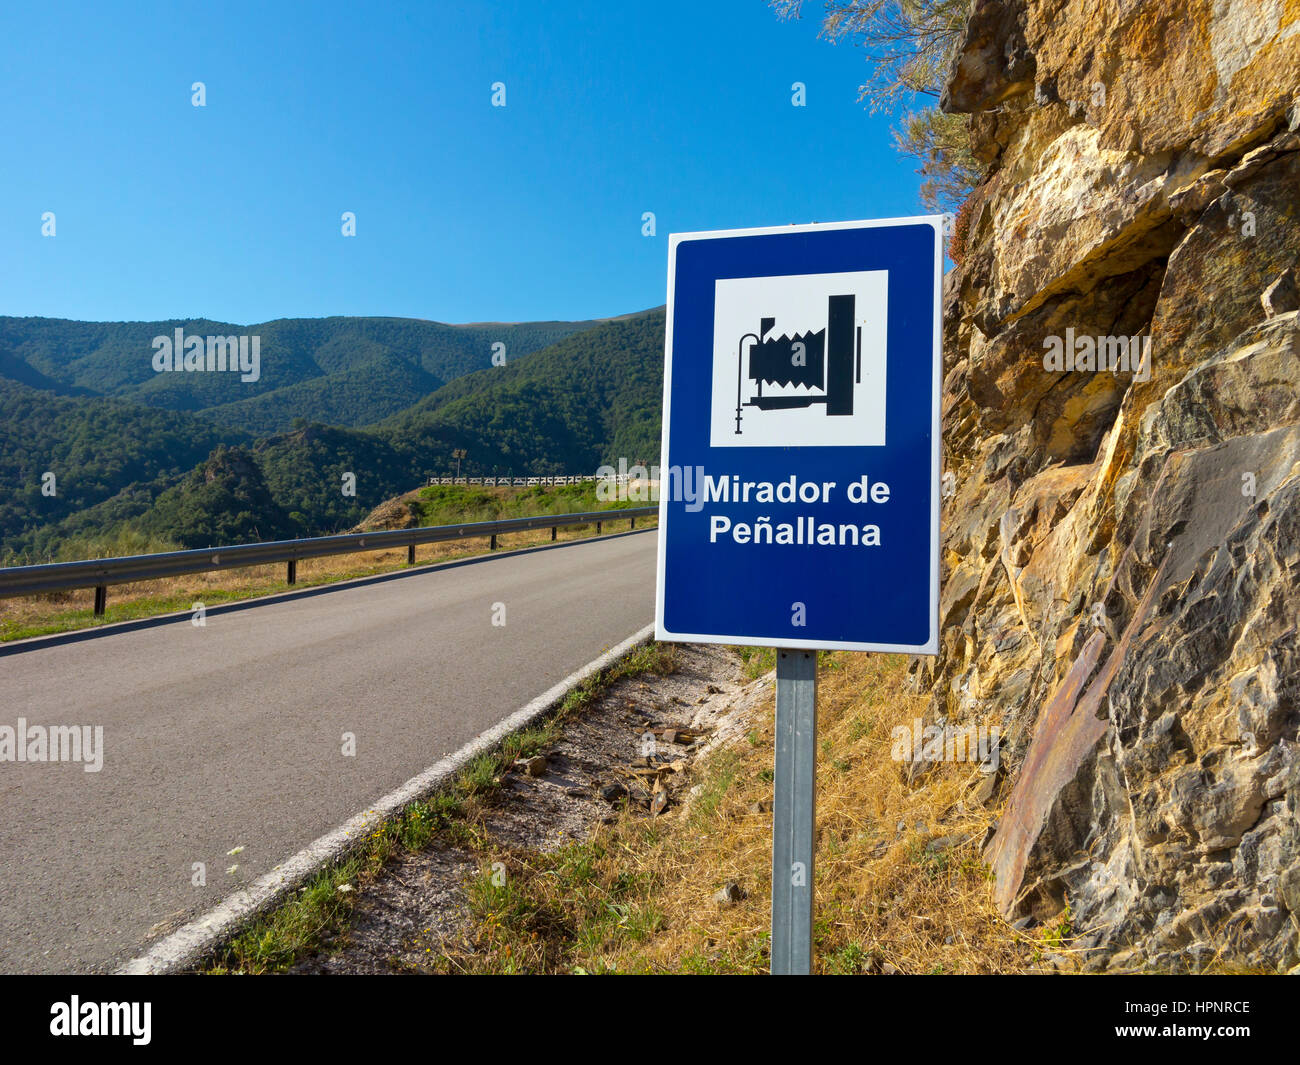 Mountain road and sign at Mirador de Penallana, Vega de Liebana, Picos de Europa National Park, Cantabria, northern Spain Stock Photo